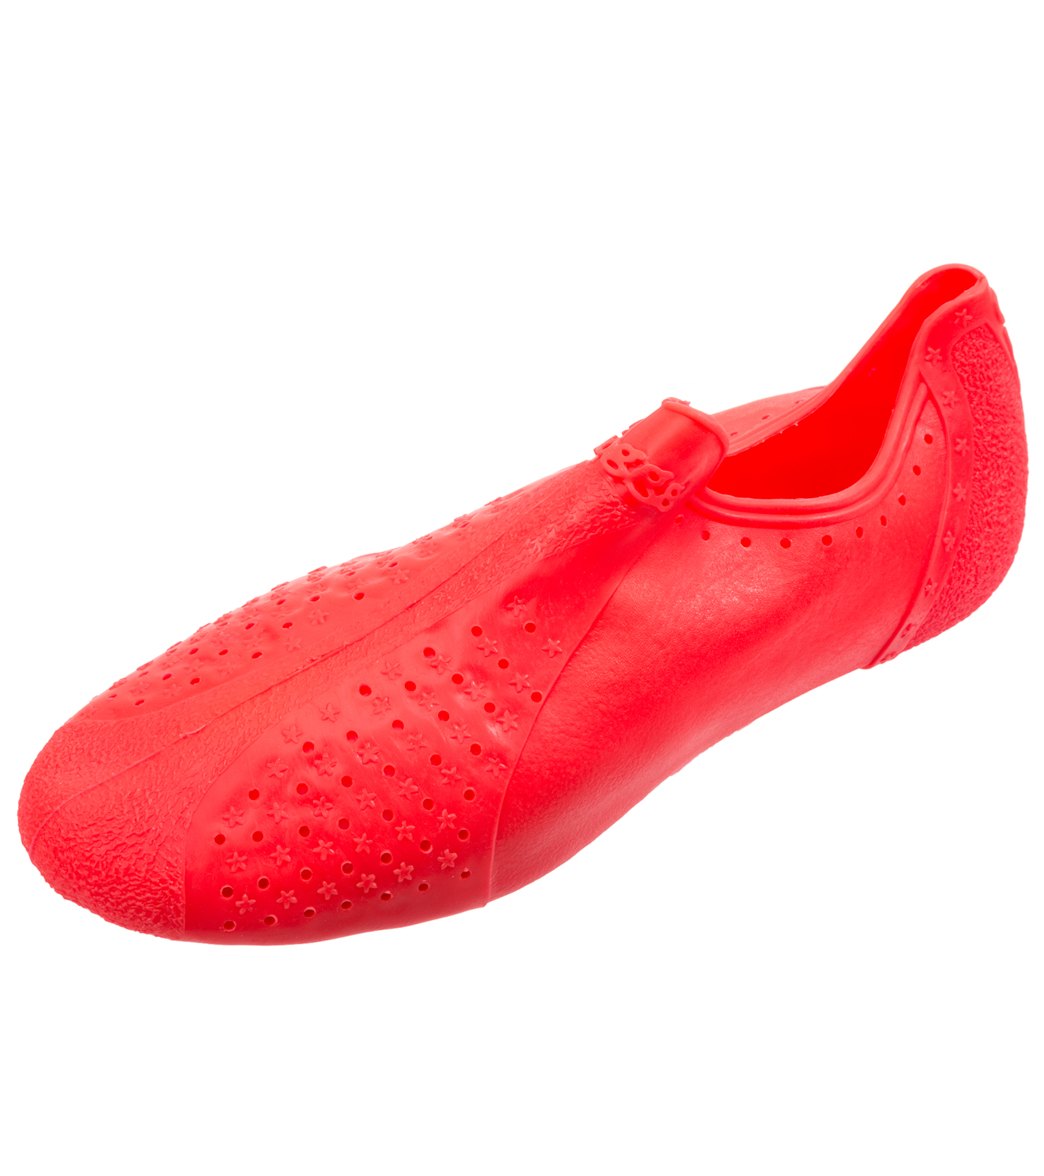 Okespor Froggs Shoes - Peach Y12/13 Euro 31/32 Rubber - Swimoutlet.com